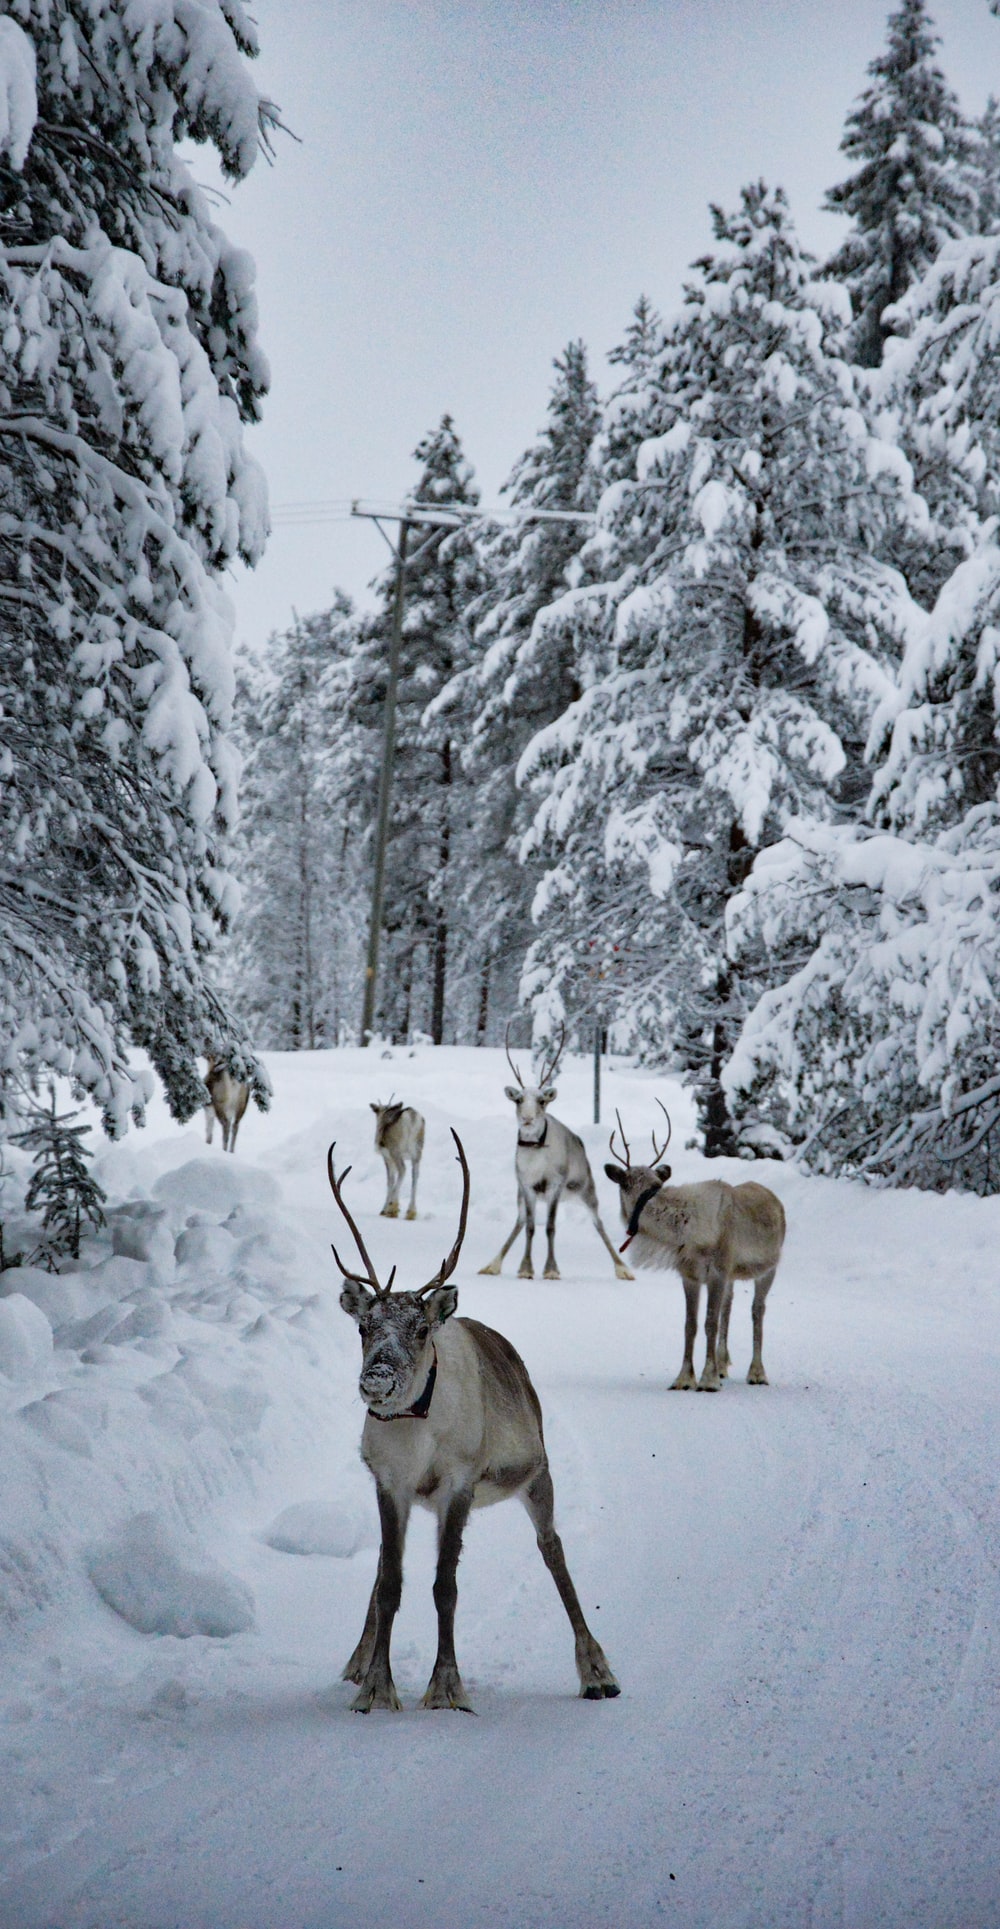 group of deer at snowfield photo